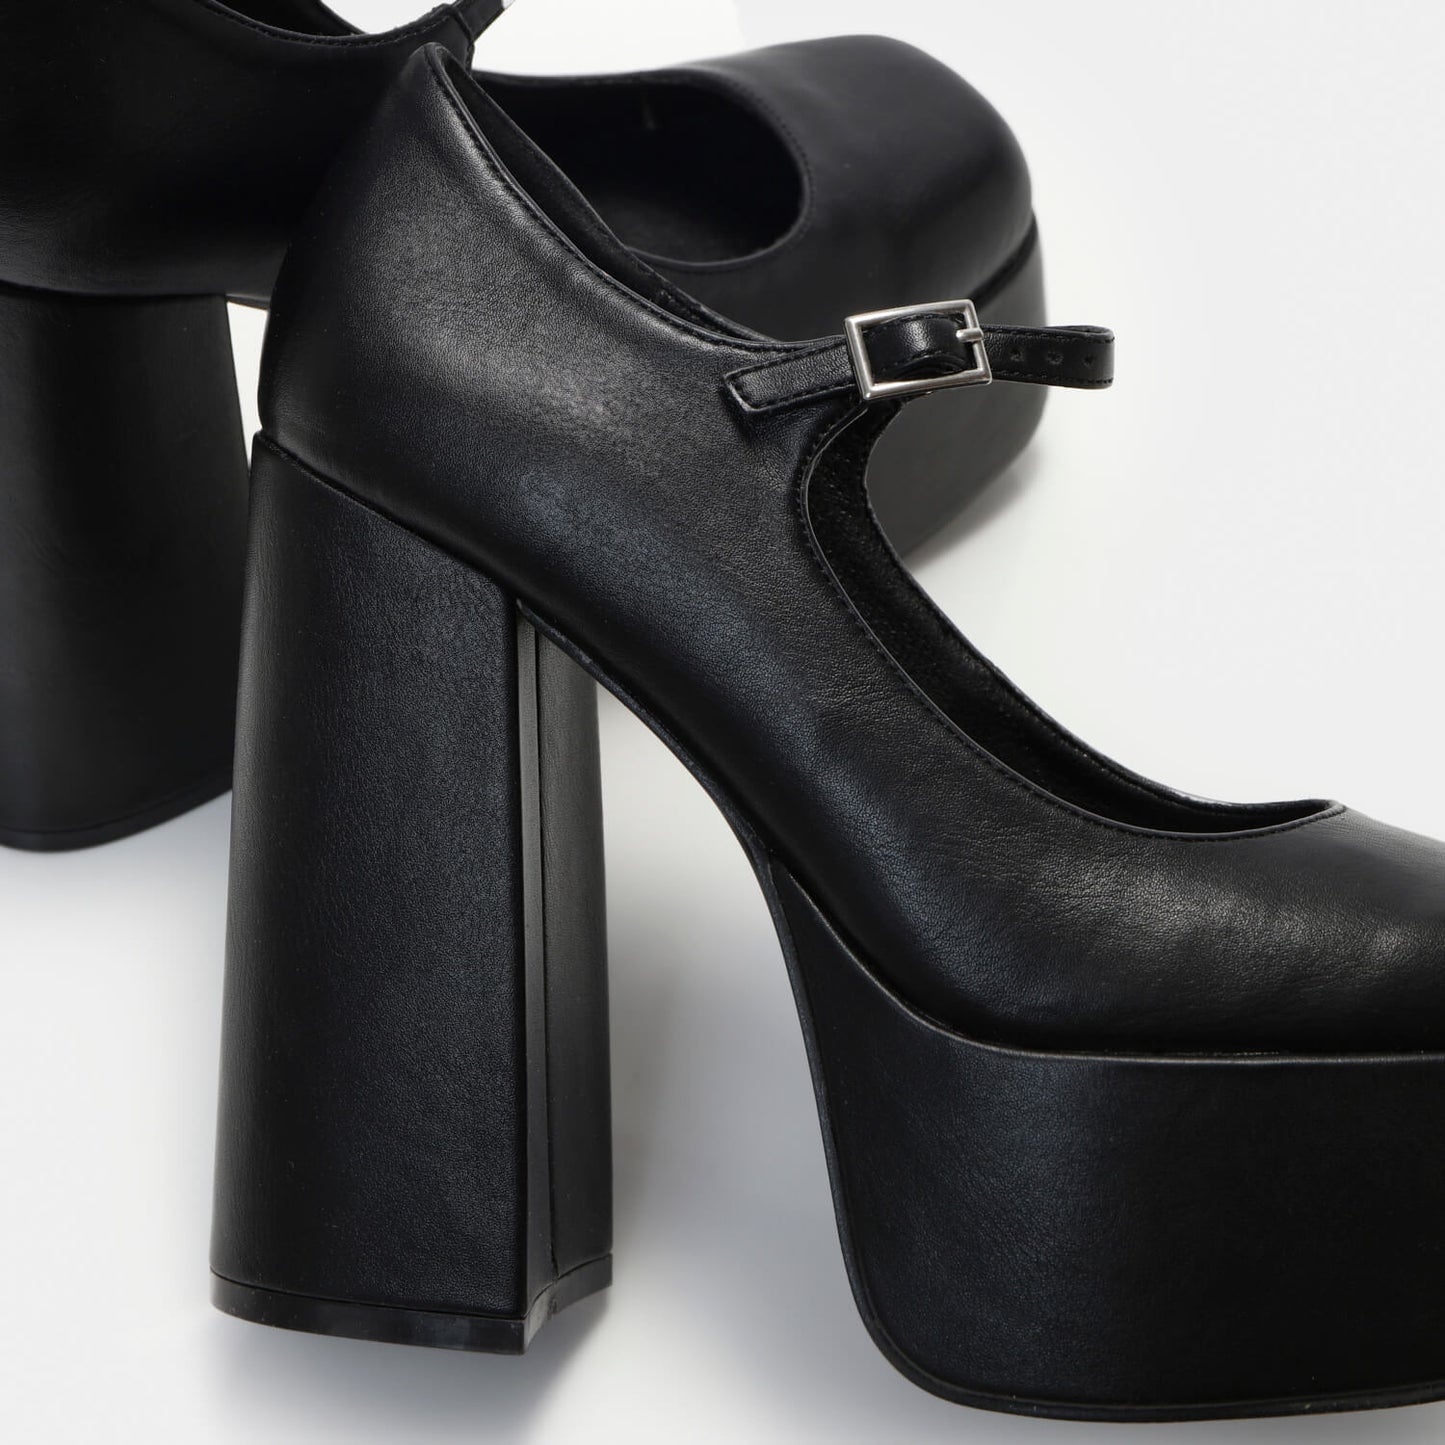 Darkbloom Black Platform Heels - Shoes - KOI Footwear - Black - Heel Detail